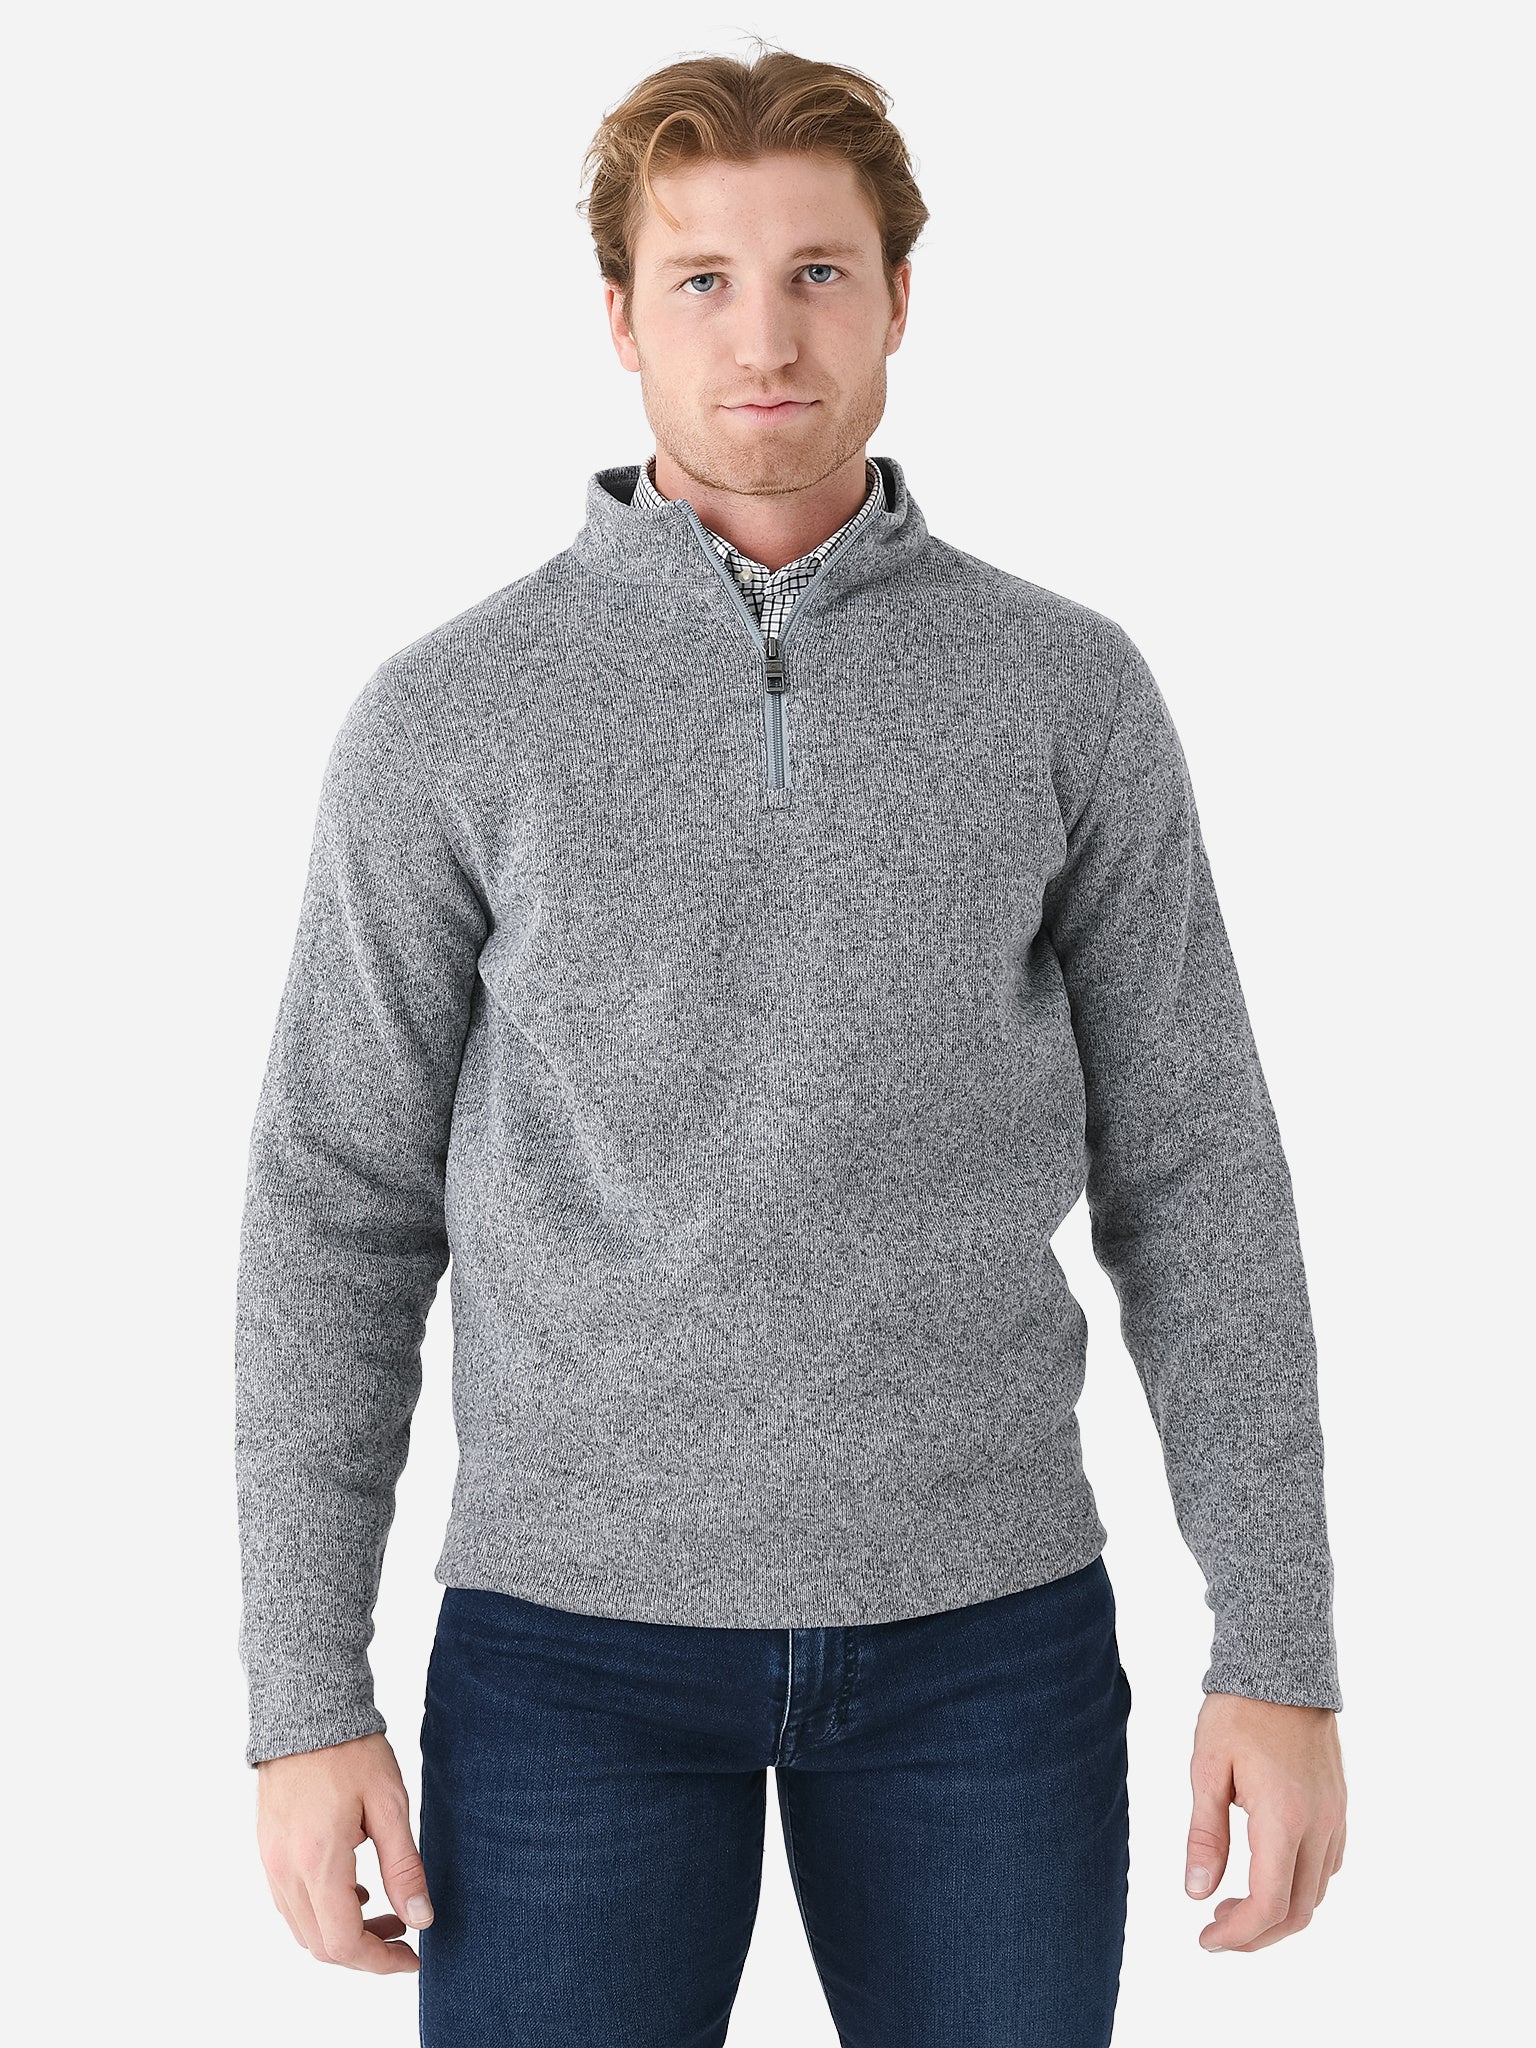 Peter Millar Crown Men's Crown Sweater Fleece Quarter-Zip ...